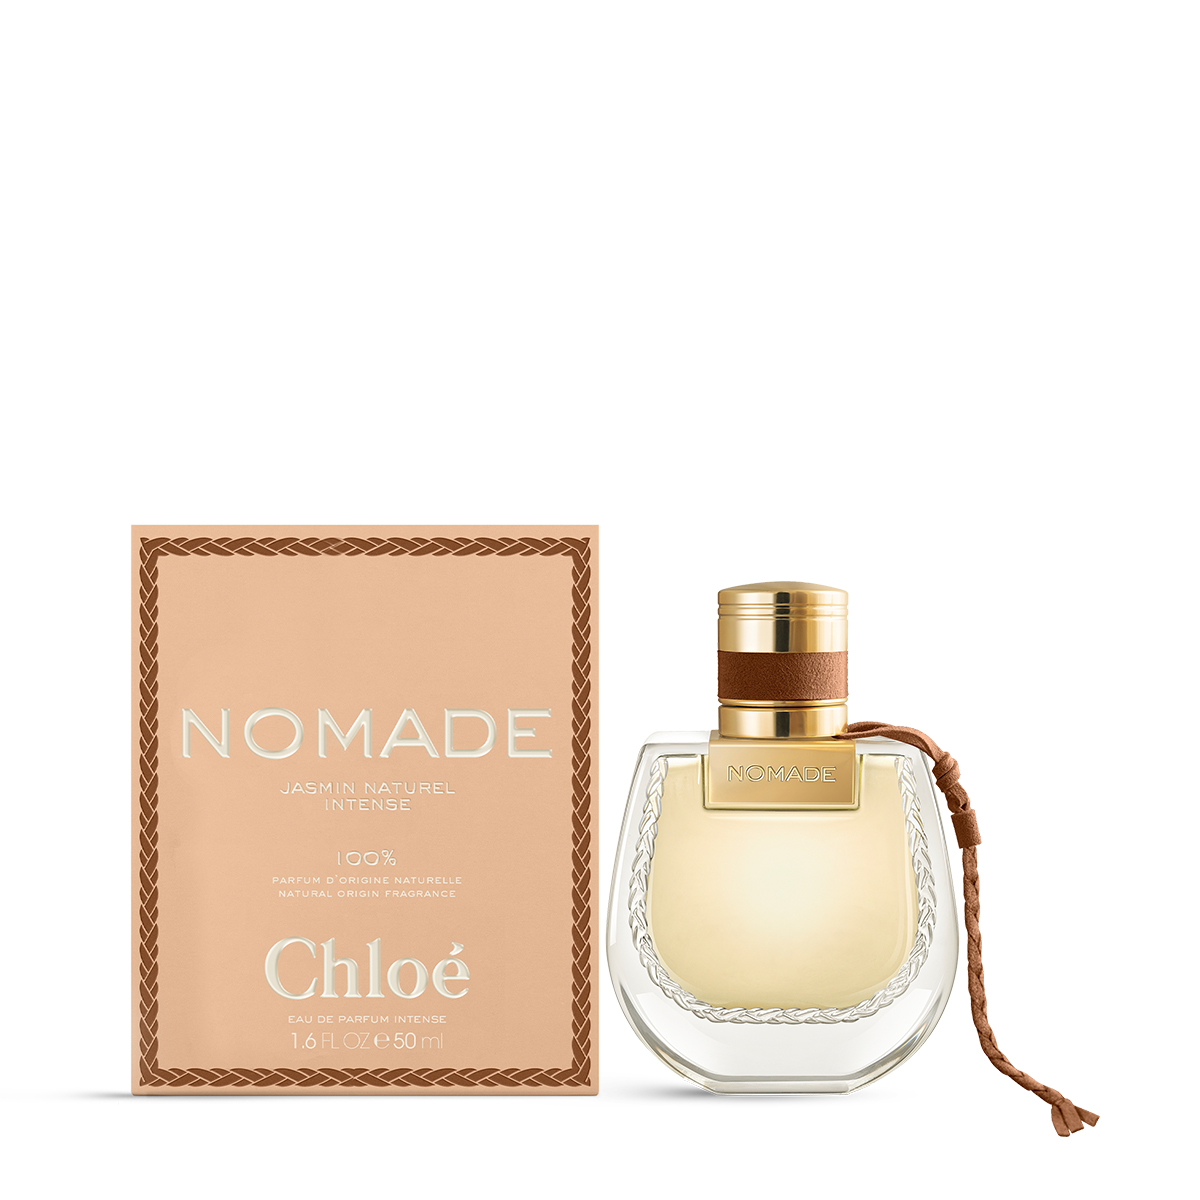 Chloé Nomade Eau de Parfum Naturelle parfum 100% d'origine naturelle